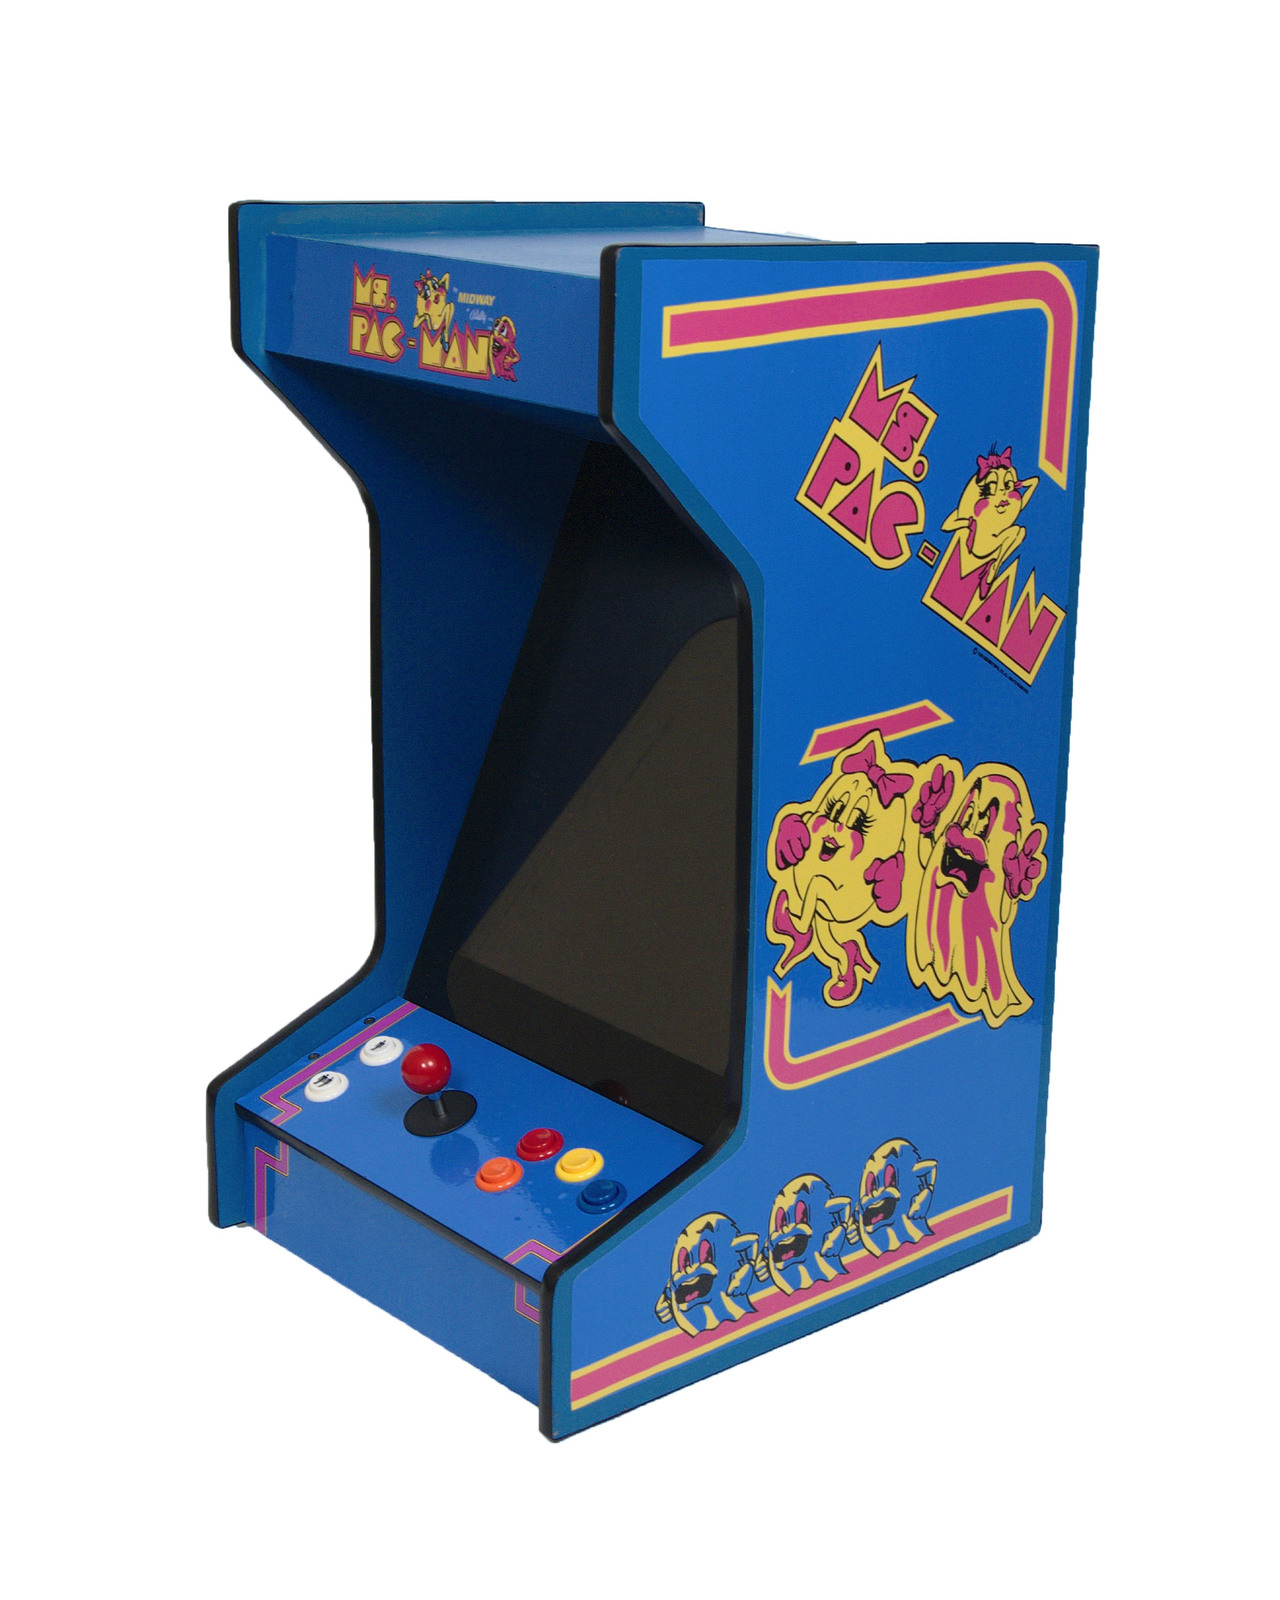 ms pacman arcade machine